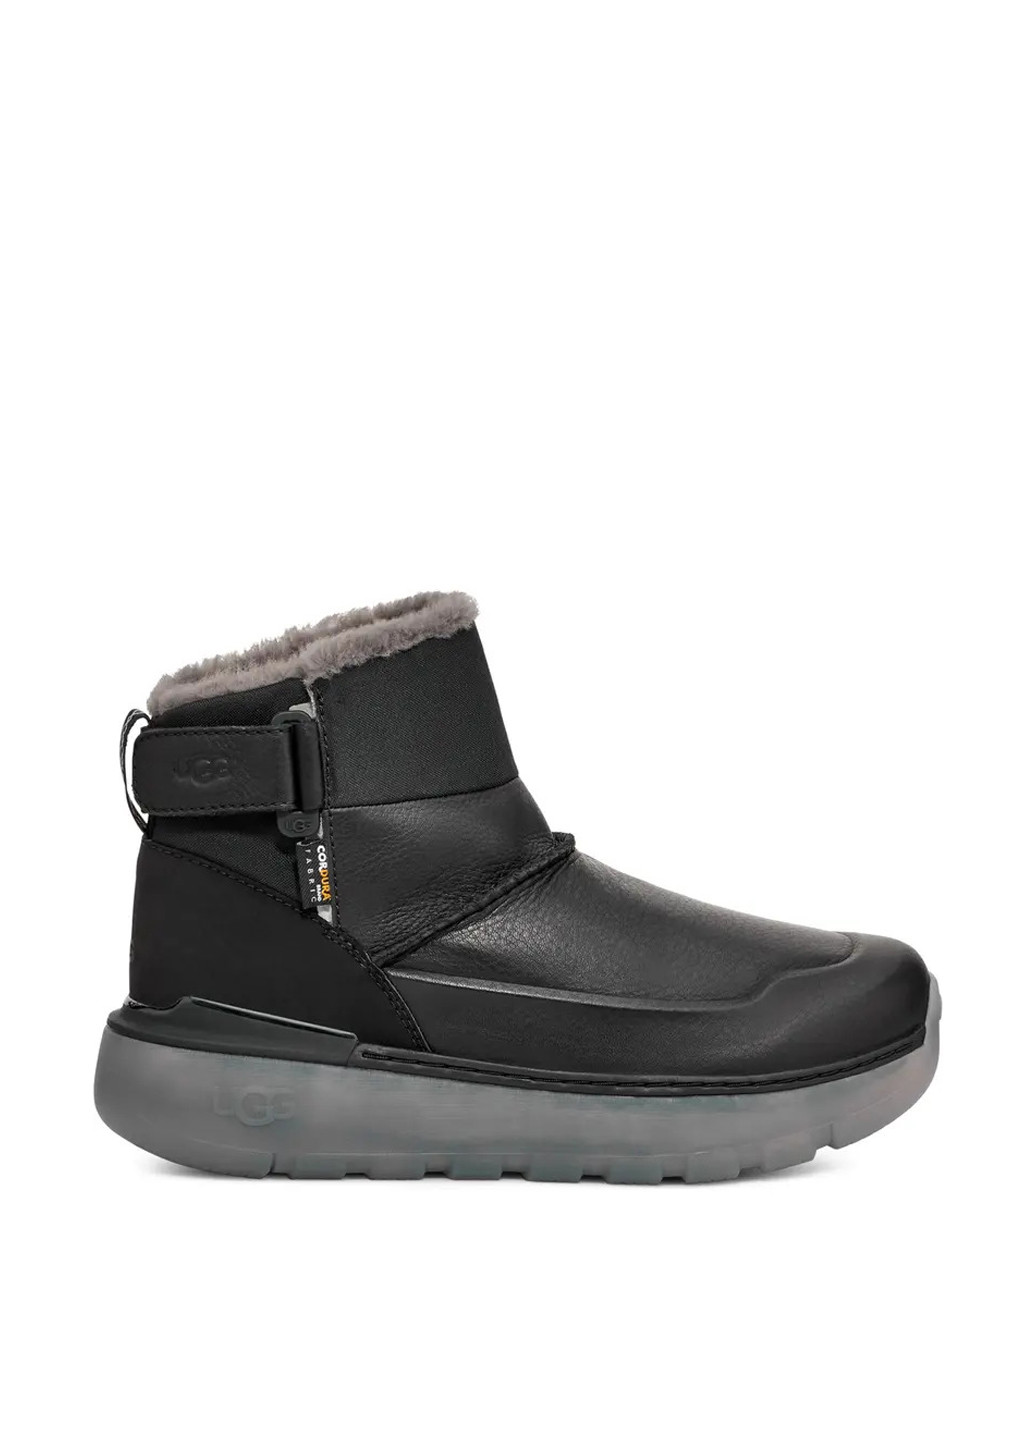 Черные зимние ботинки UGG